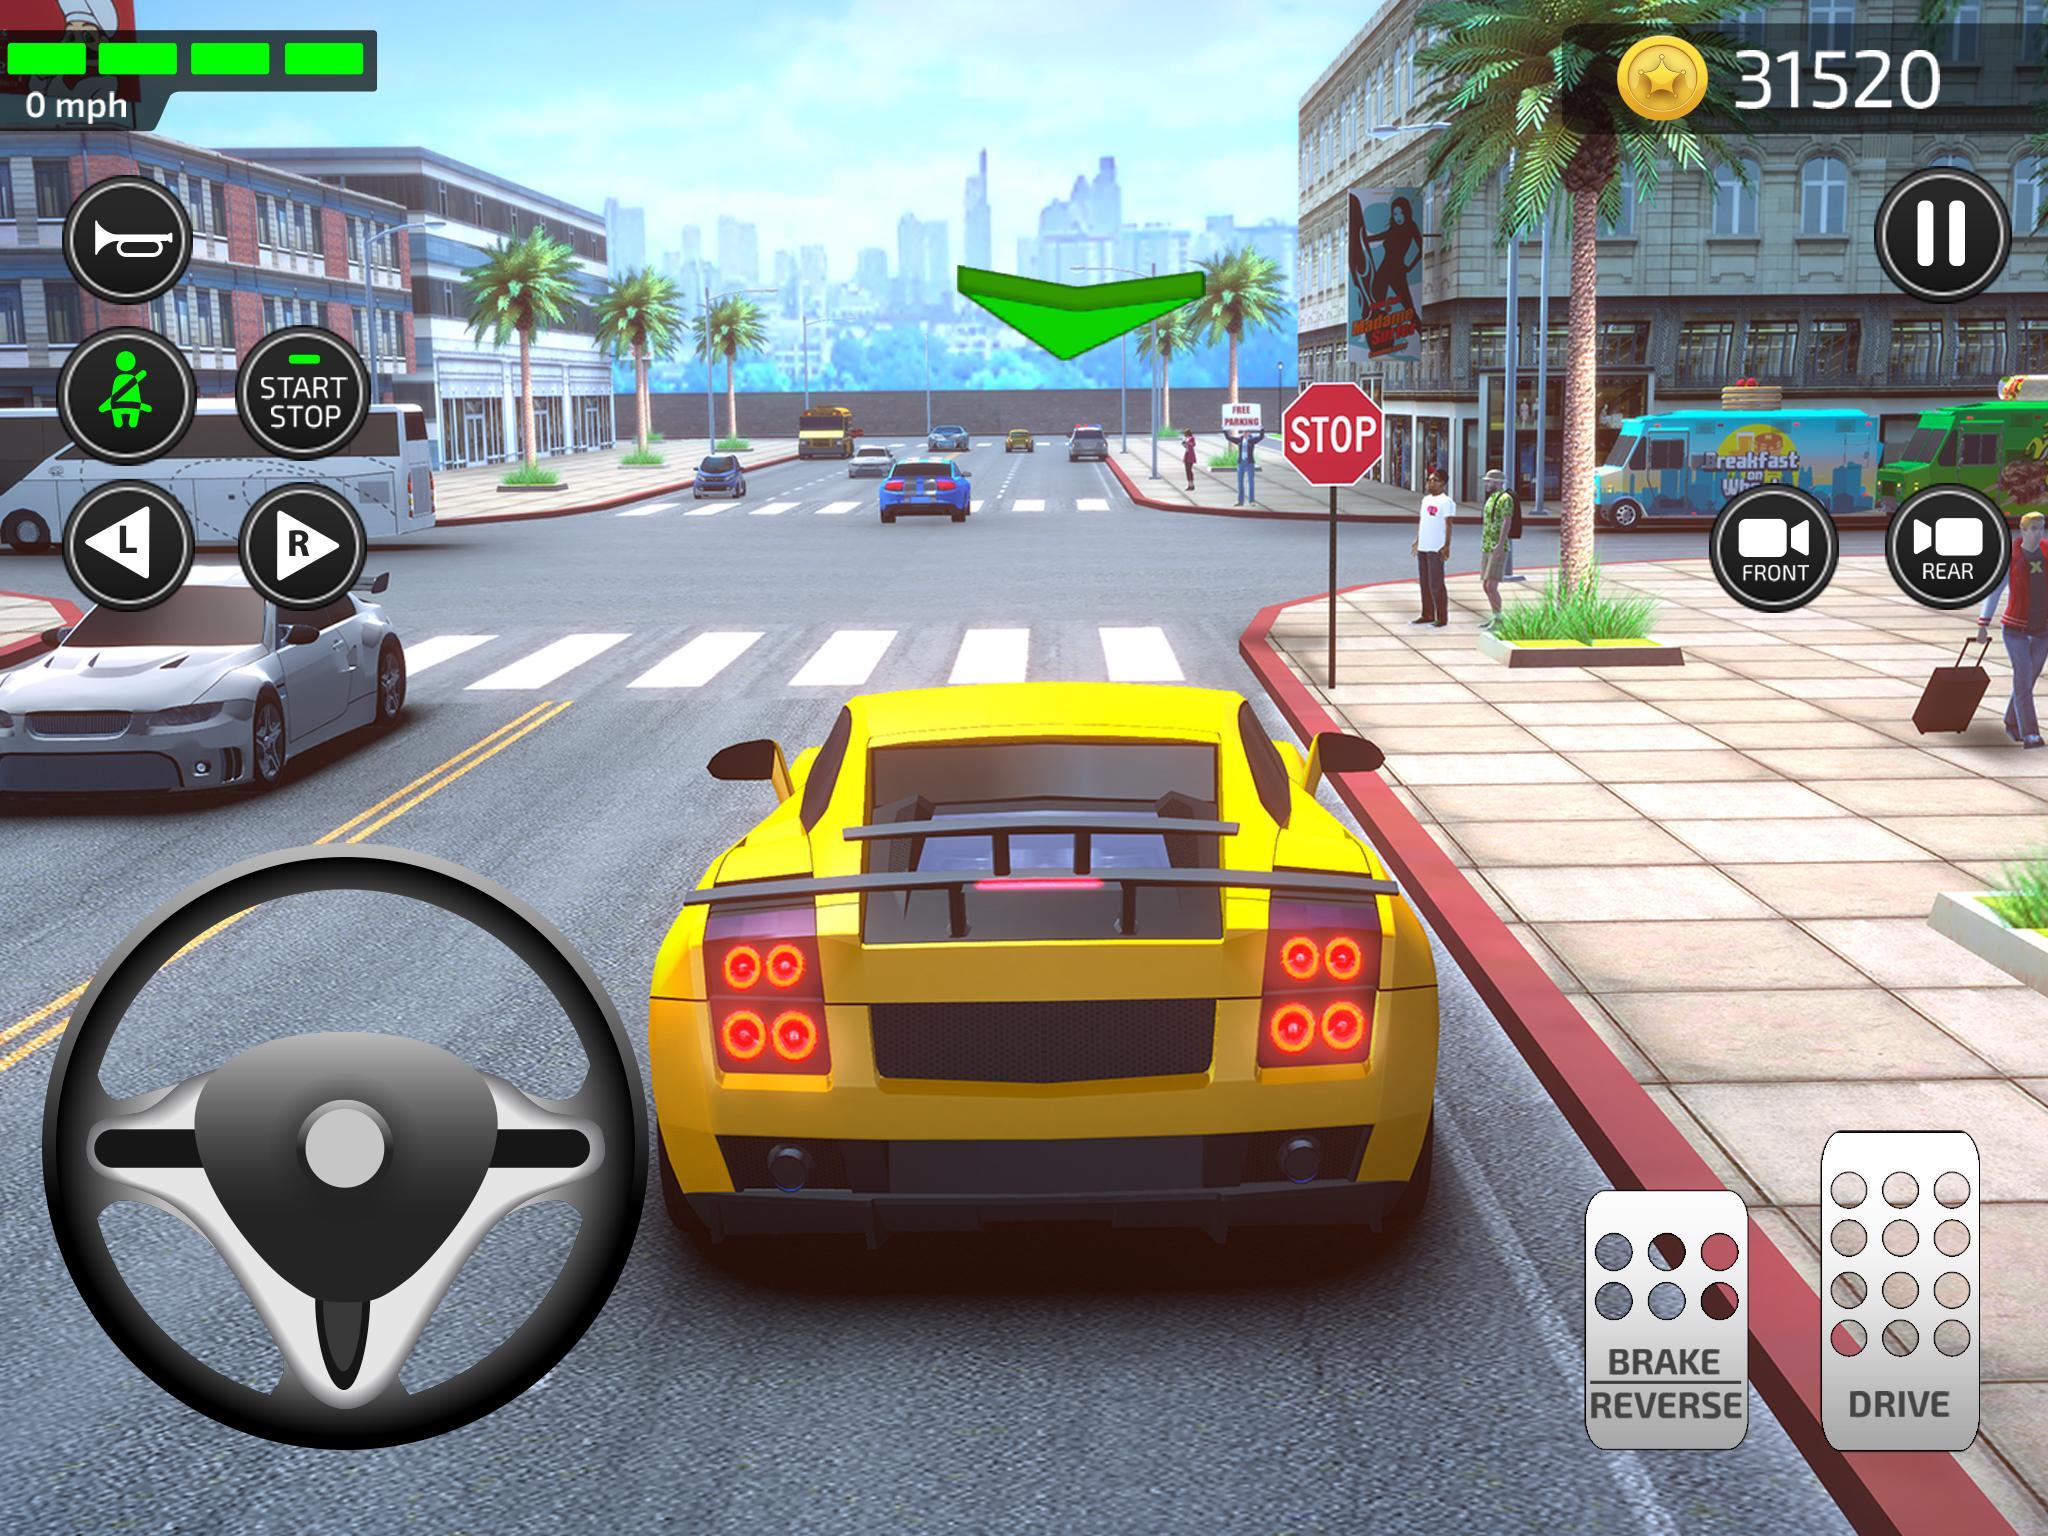 Juegos De Carros Autos Simulador De Coches 2020 For Android Apk Download - juegos de carros roblox